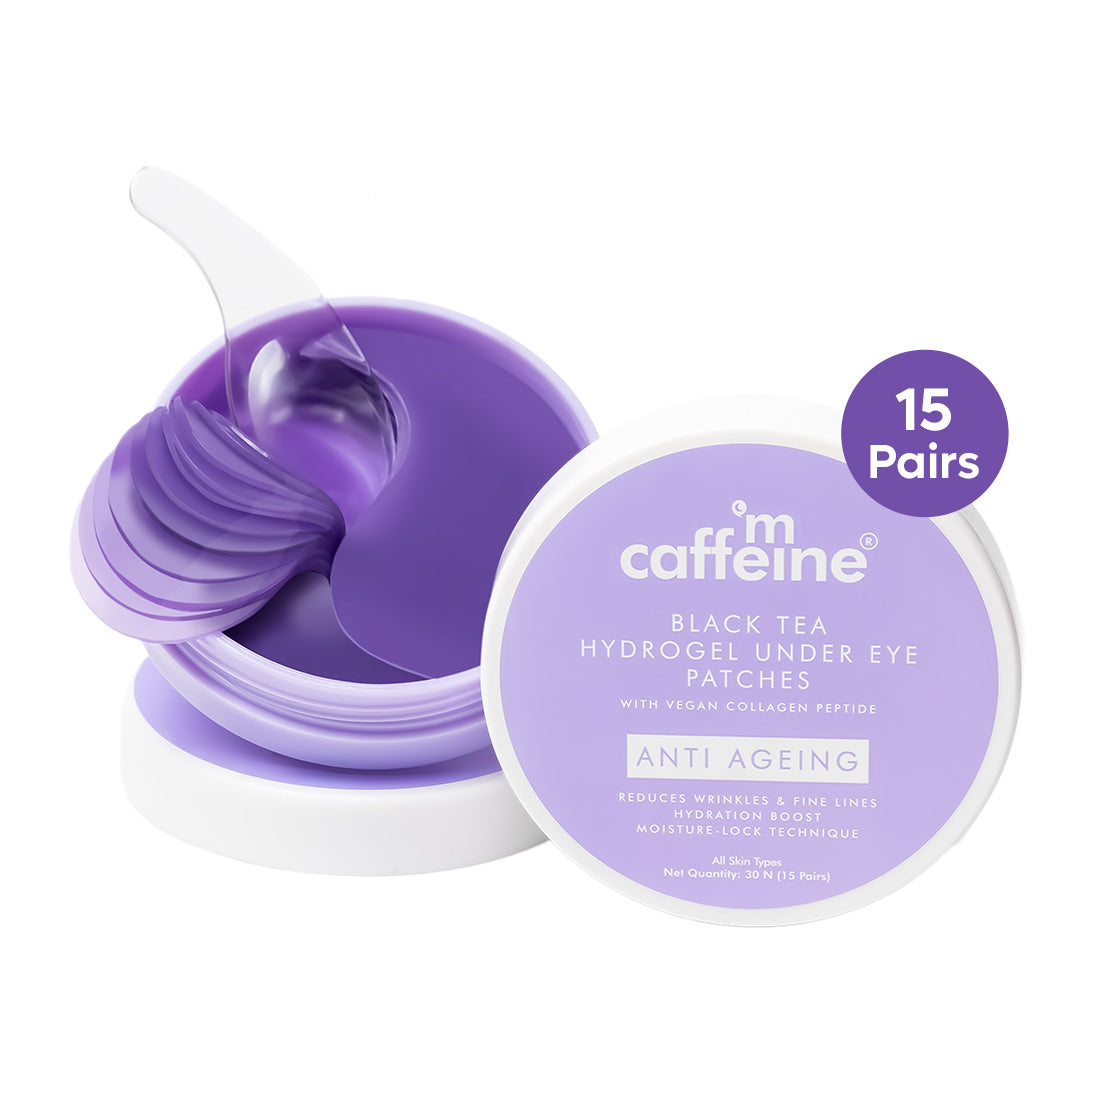 mCaffeine Black Tea Under Eye Patches | Collagen Peptide